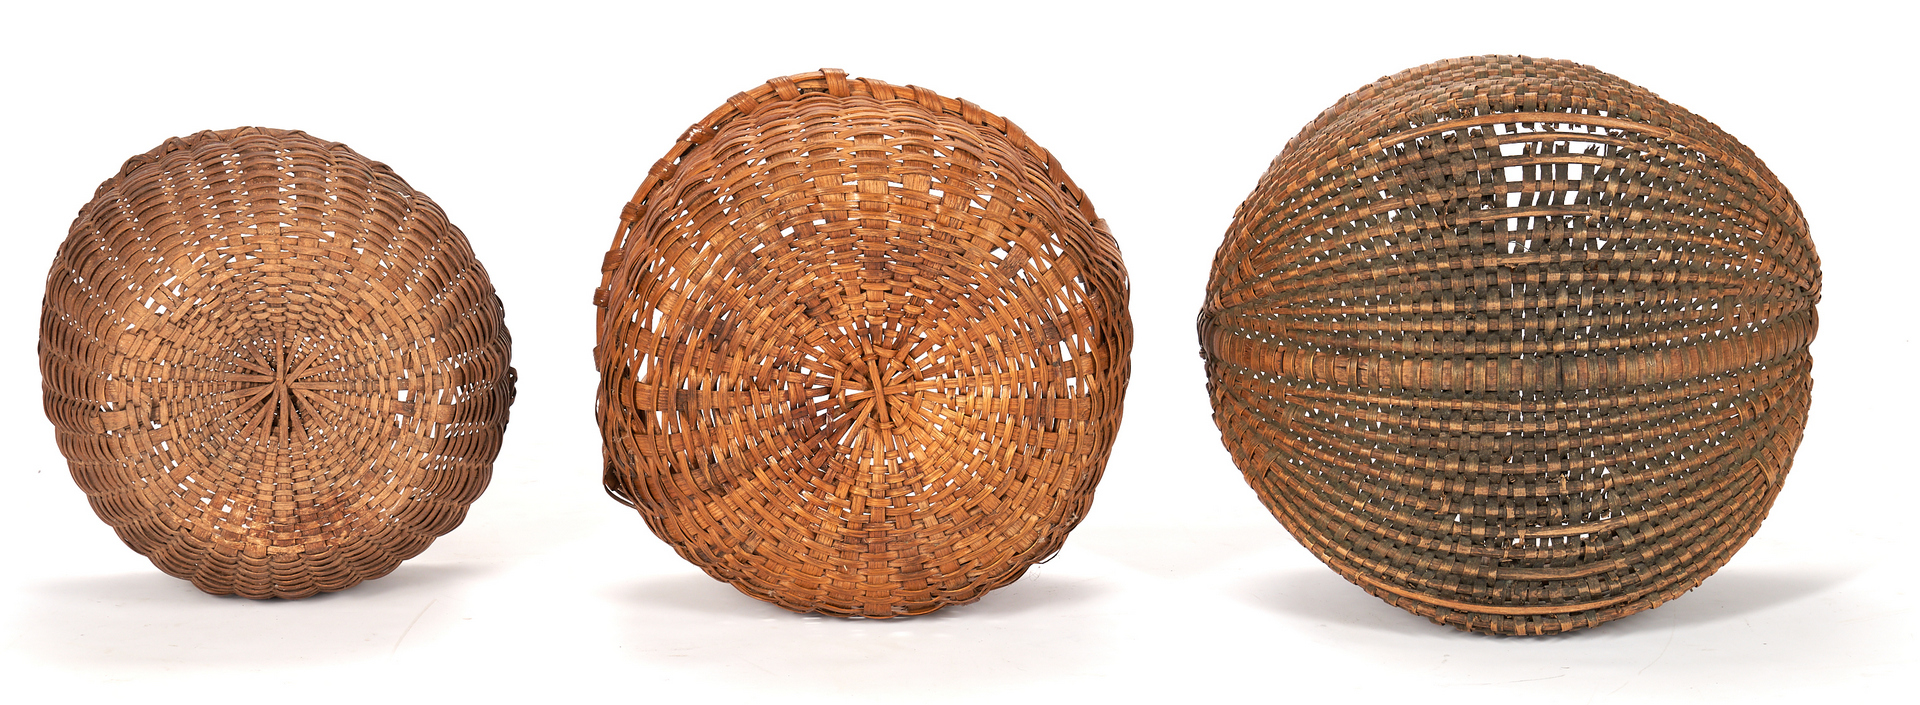 Lot 1060: 6 Southern Split Oak Baskets, incl. Miniature